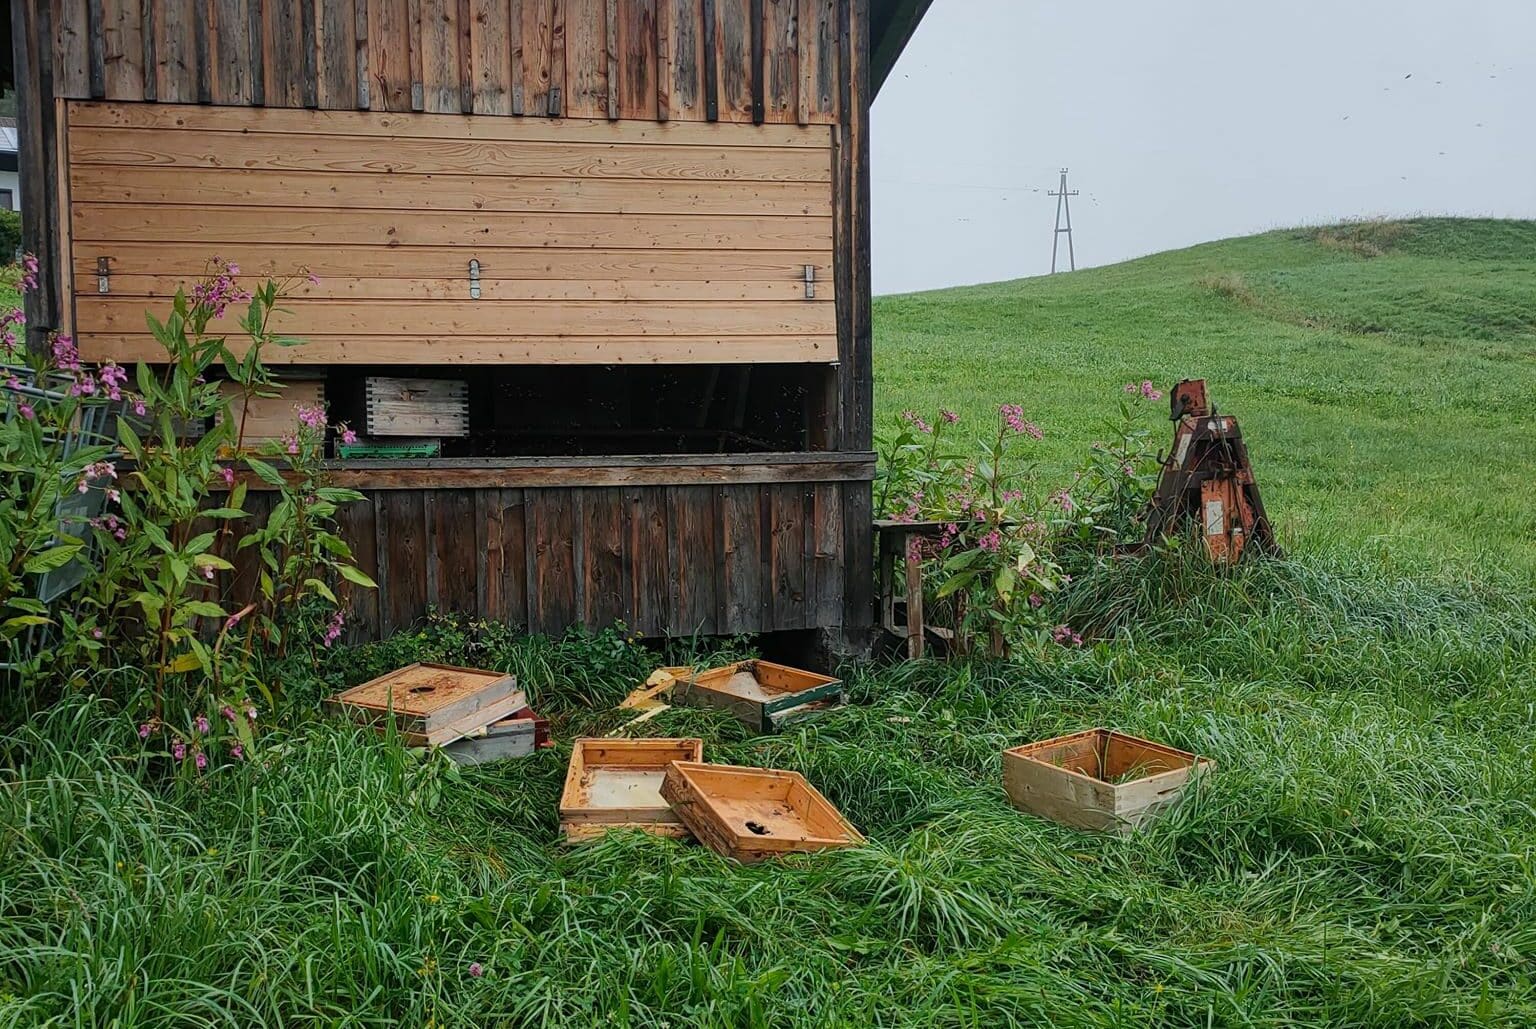 Um an den Honig zu gelangen, hat der Bär die Bienenhütte beschädigt. 